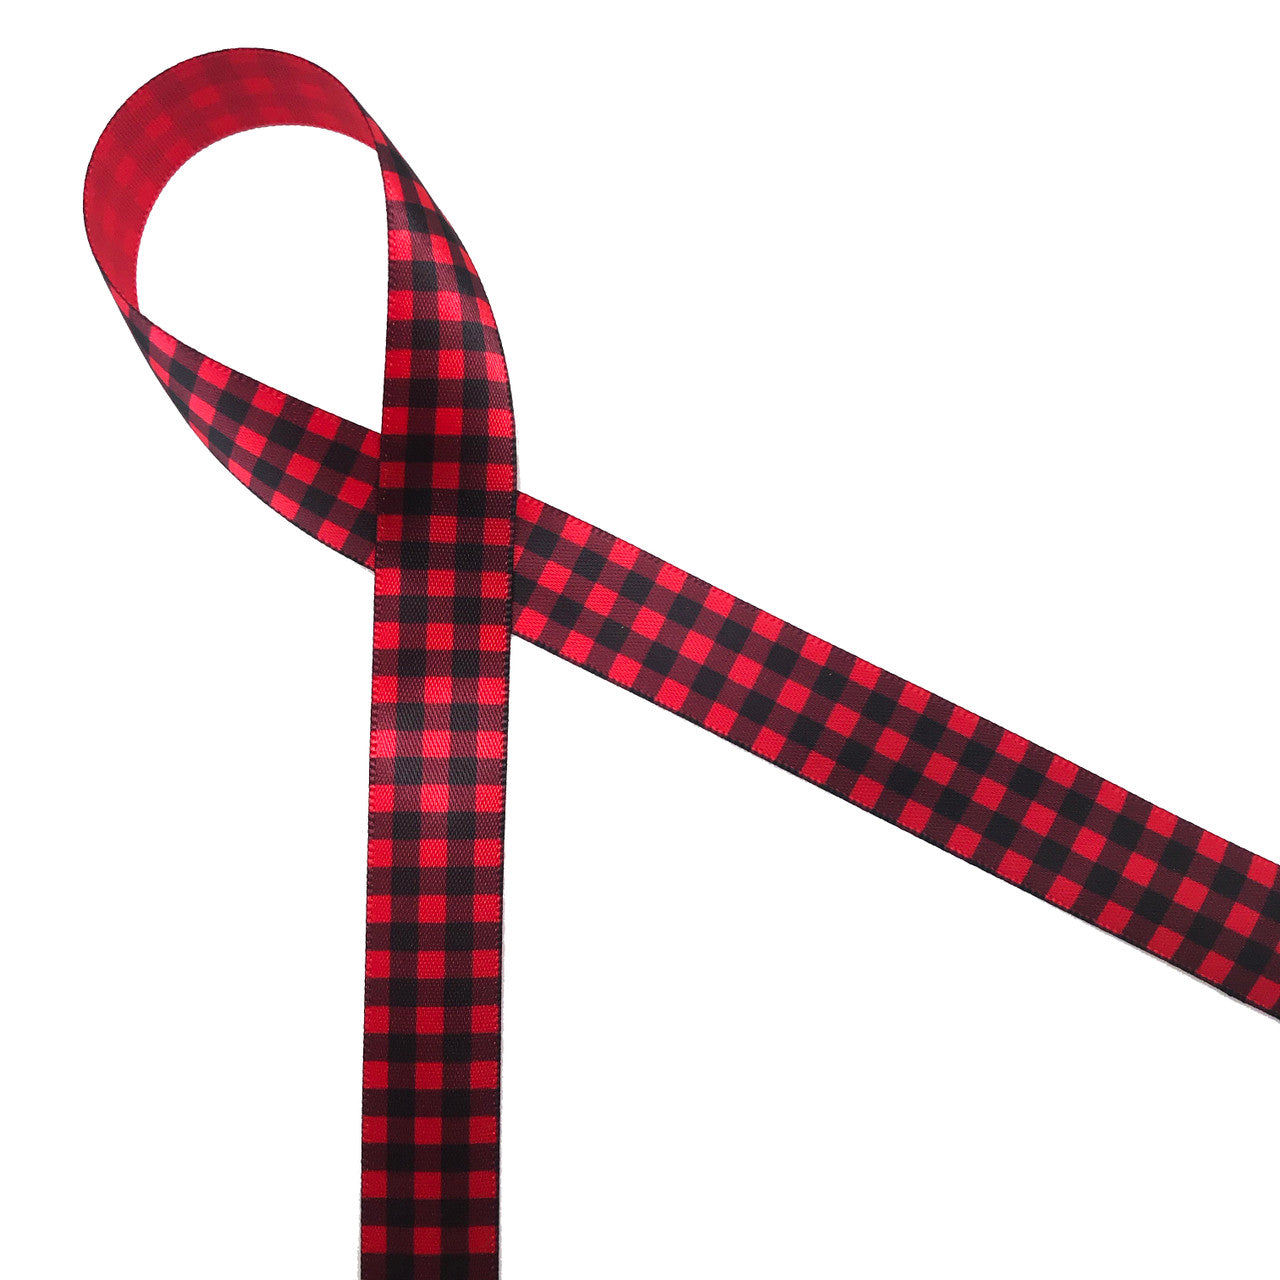  Ribbli Red and Black Gingham Ribbon,3/8 Inches x Continuous 25  Yards,100% Polyester Woven Edge,Plaid Ribbon,Check Ribbon,Buffalo Checked  Ribbon